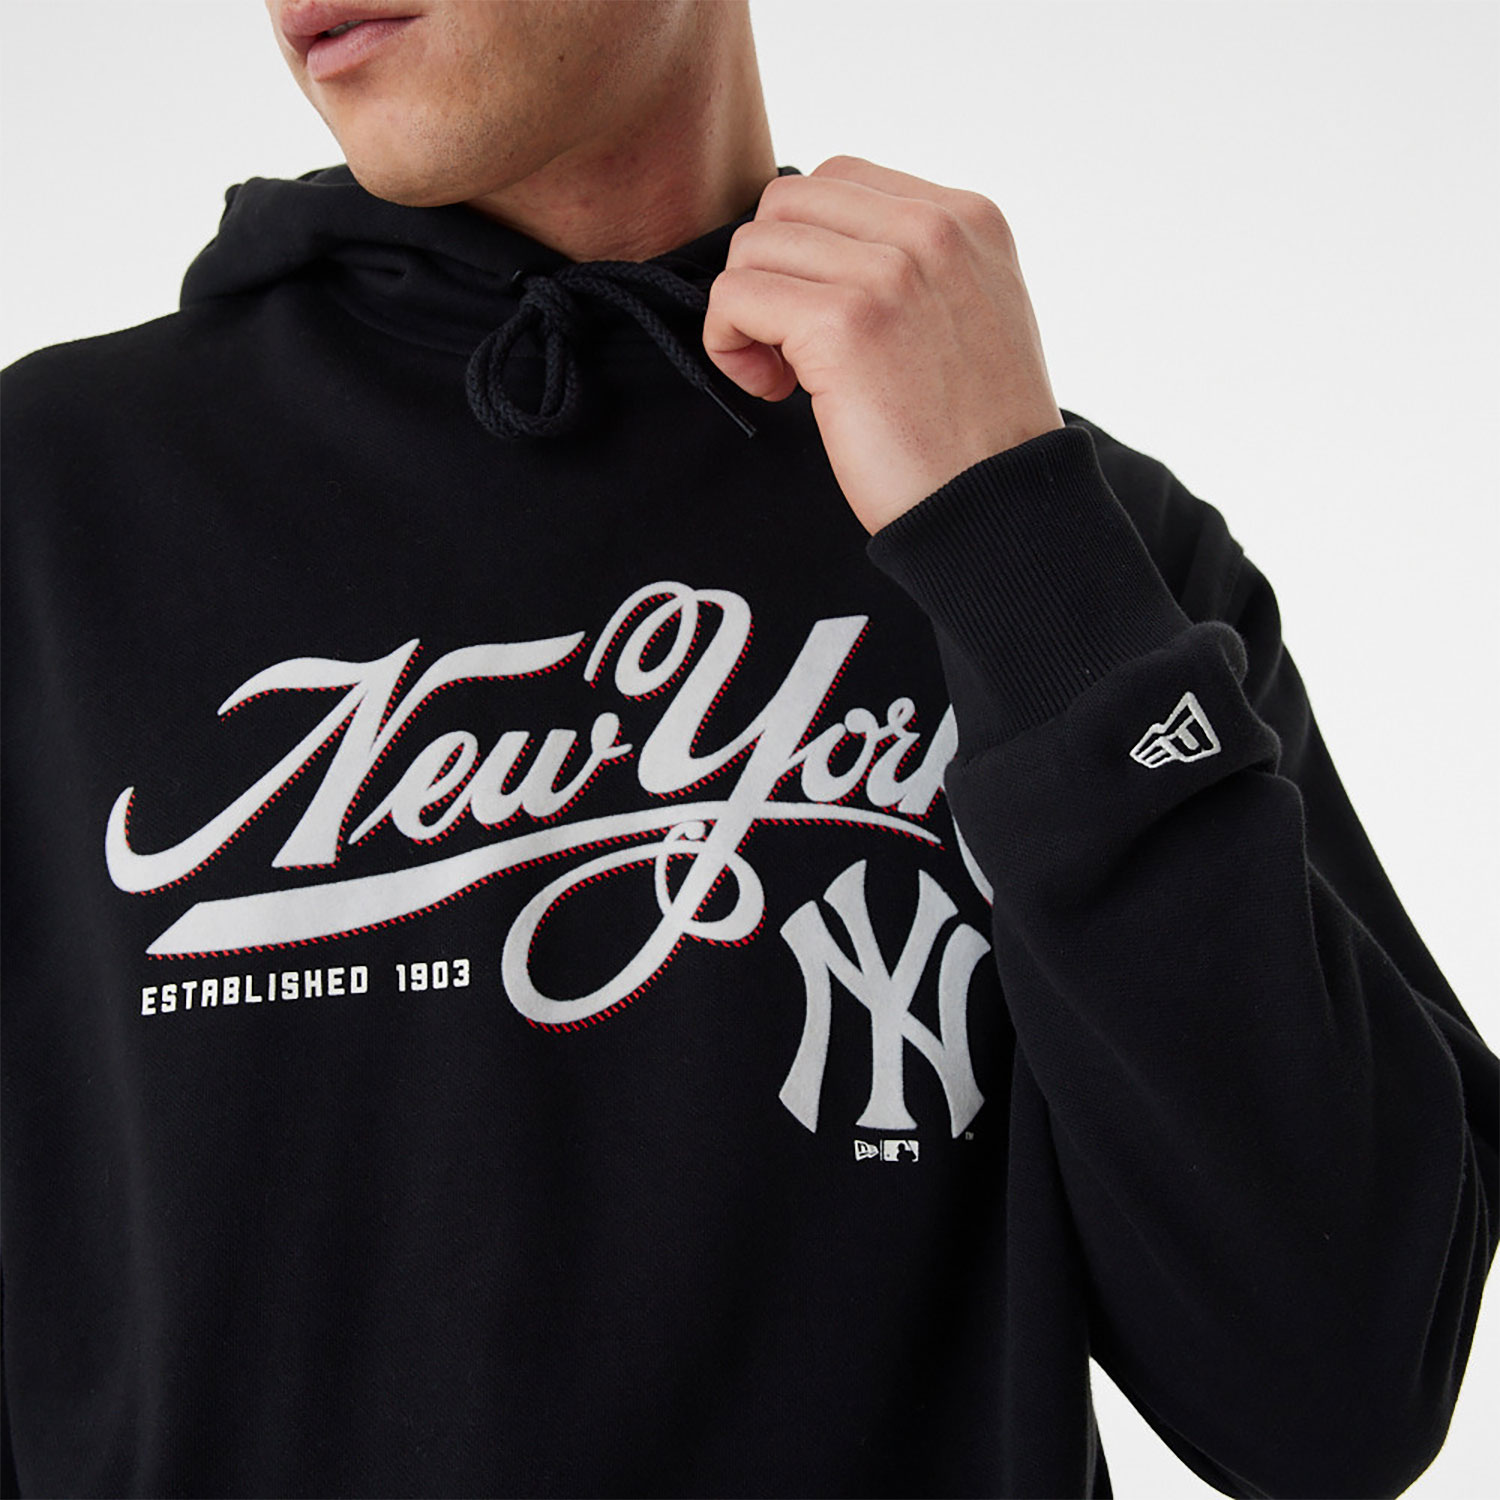 New York Yankees MLB Team Retro Graphic Black Oversized Hoodie